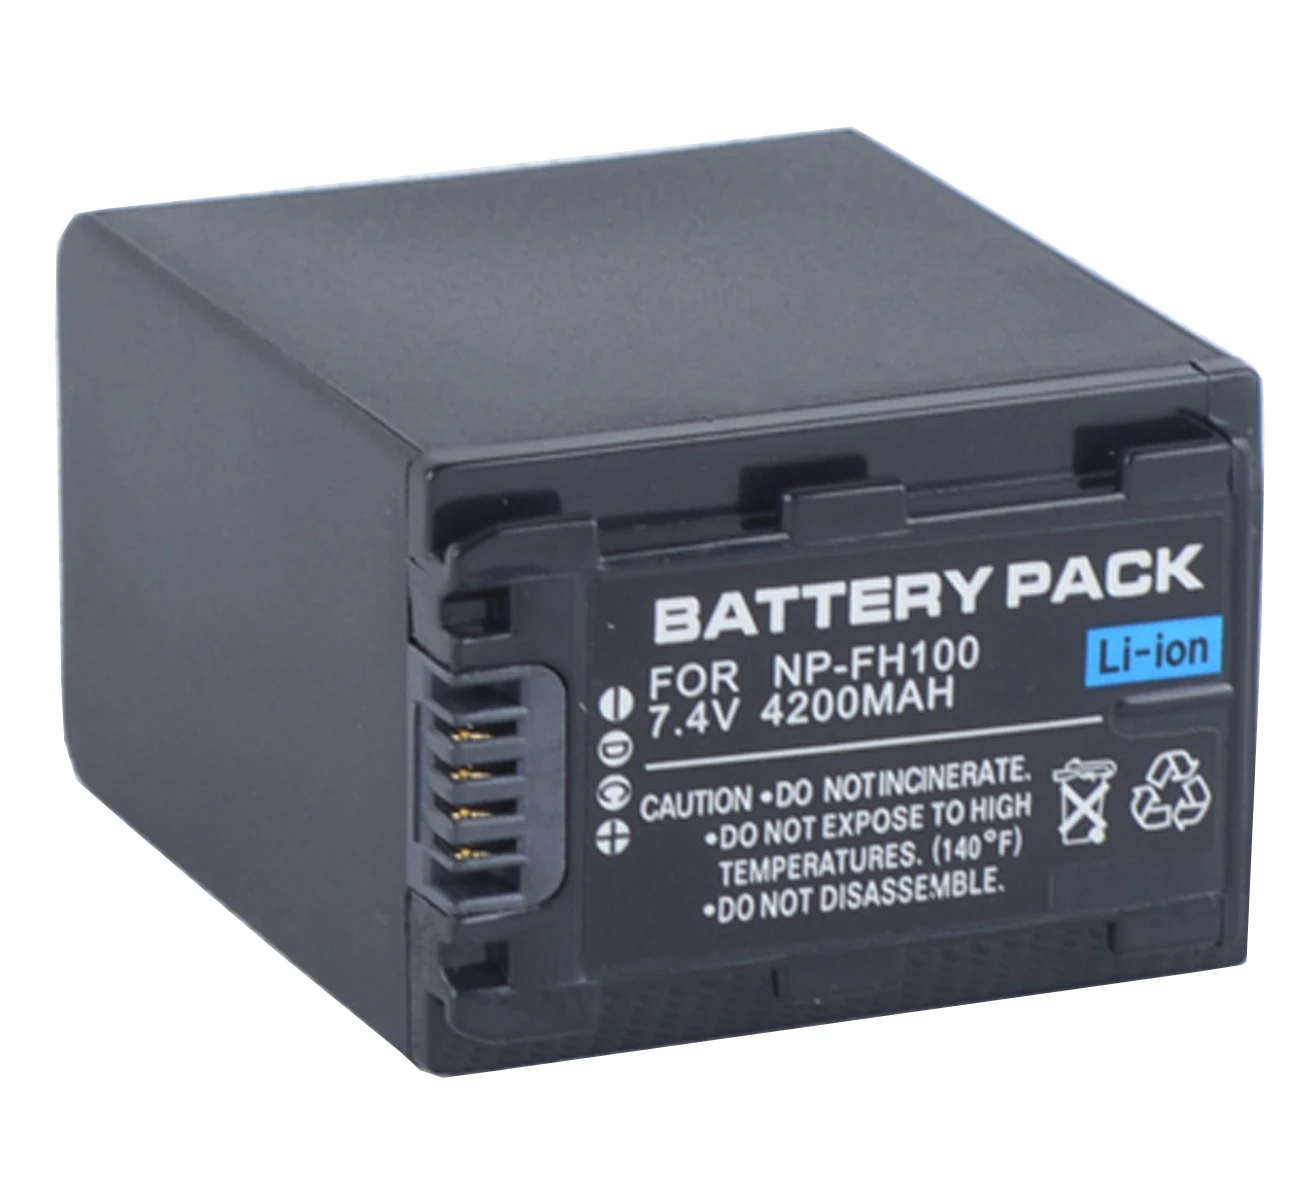 

Battery Pack for Sony DCR-DVD108E, DVD308E, DVD408E, DVD508E, DVD608E, DVD708E, DCR-DVD808E, DCR-DVD908E DVD Handycam Camcorder